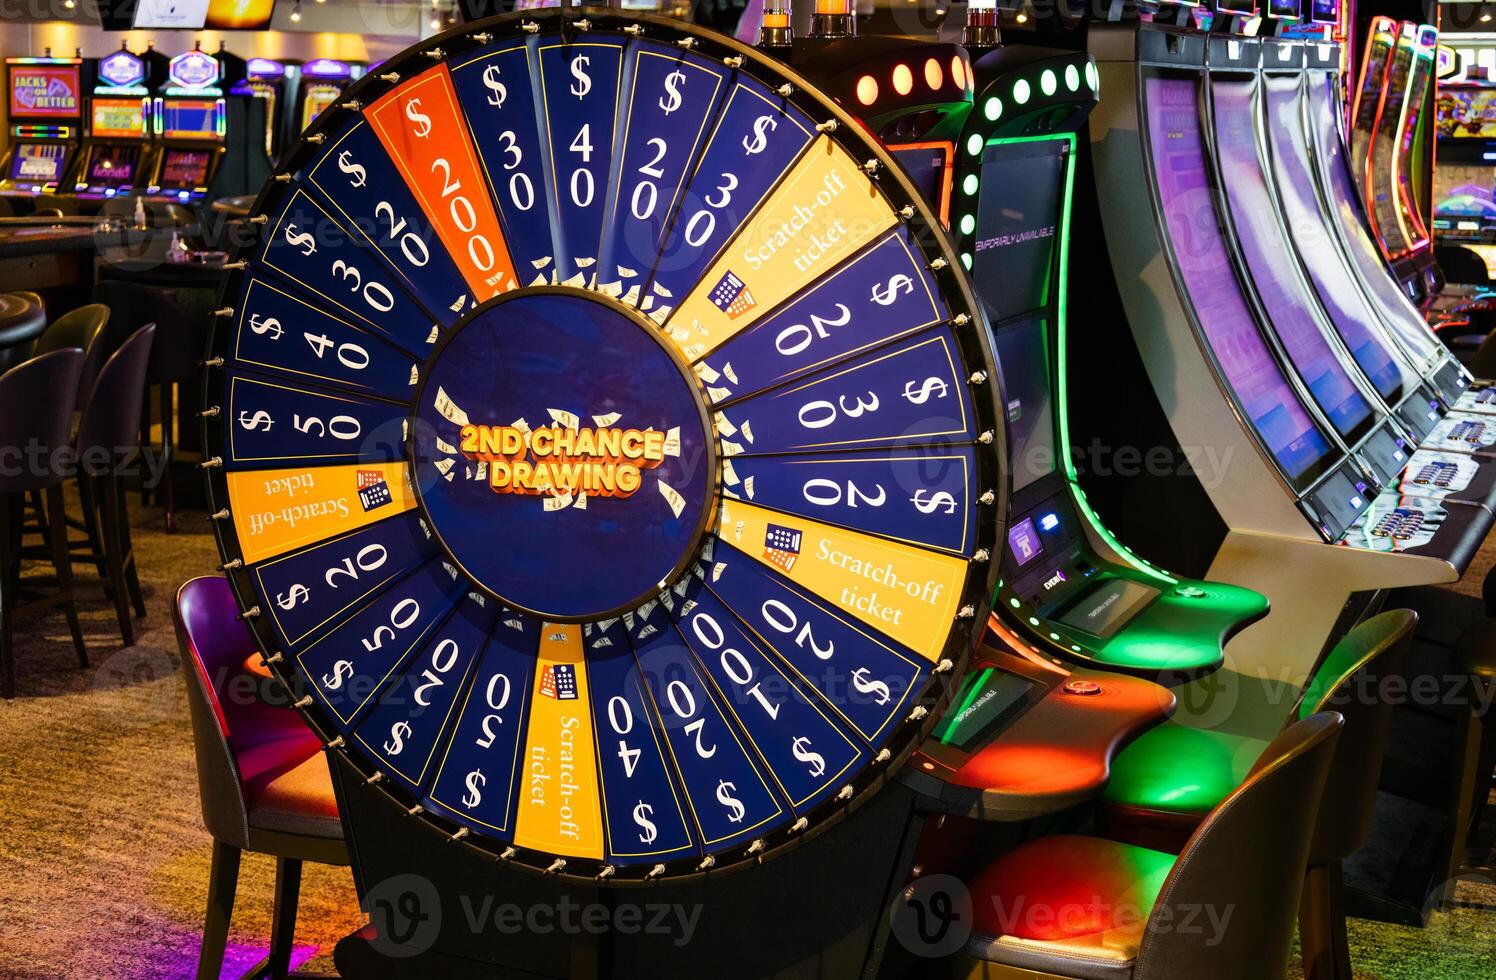 kasino hasardspel blackjack och spår maskiner väntar för spelare och turist till foto